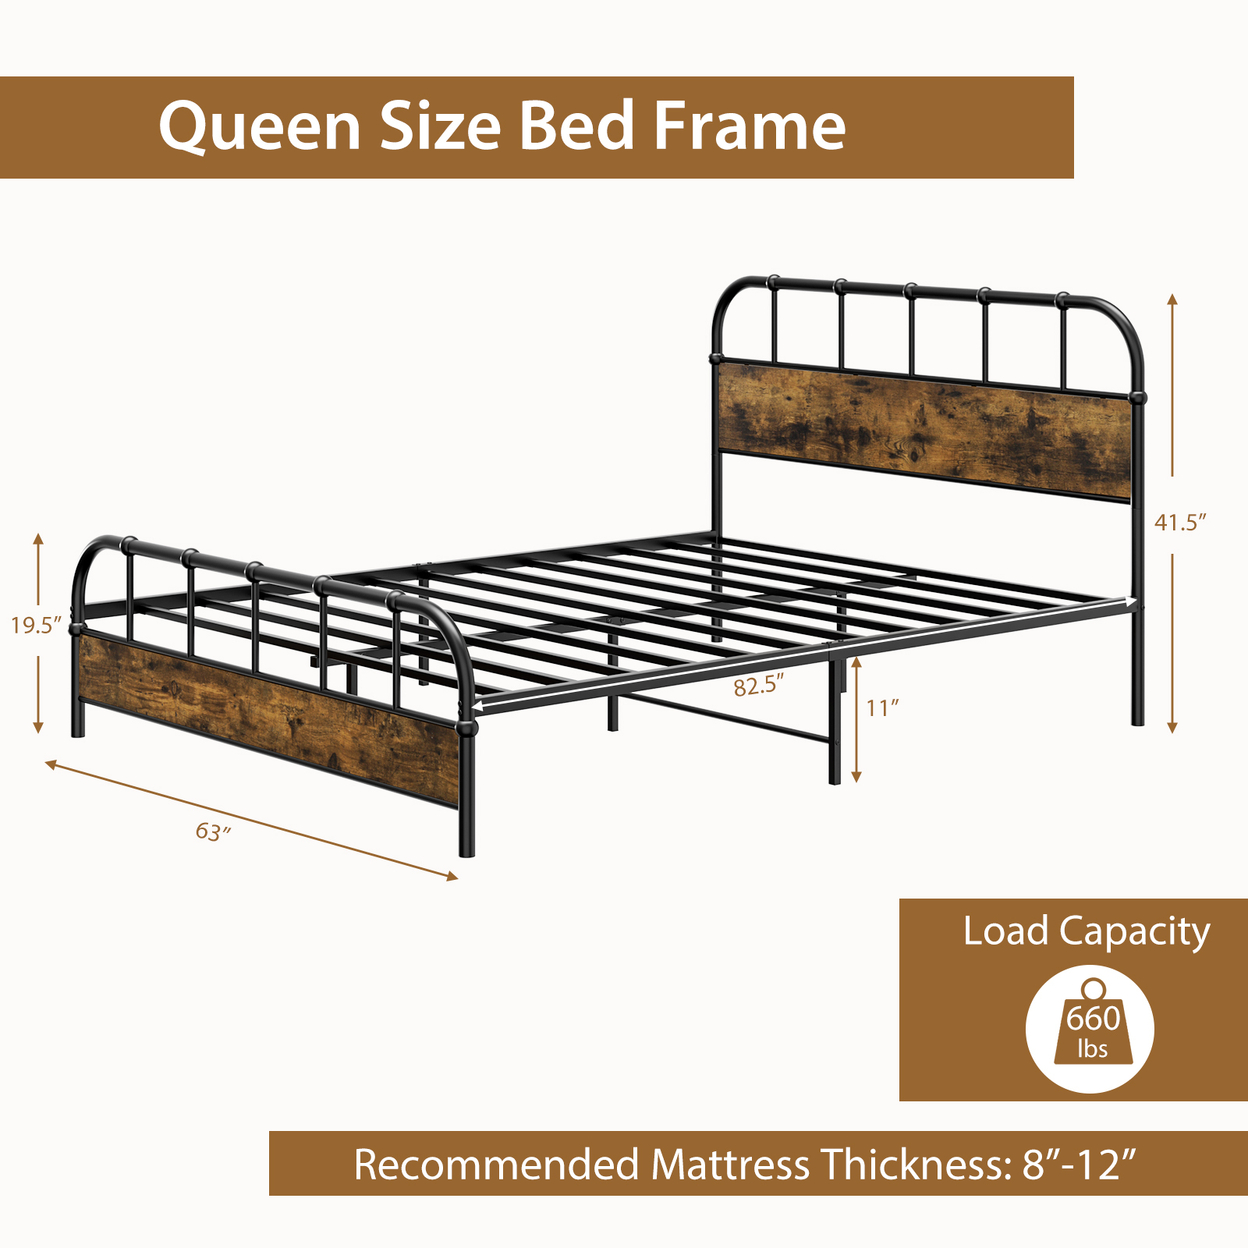 Queen Size Bed Frame Industrial Platform Bed Frame W/ Under Bed Storage